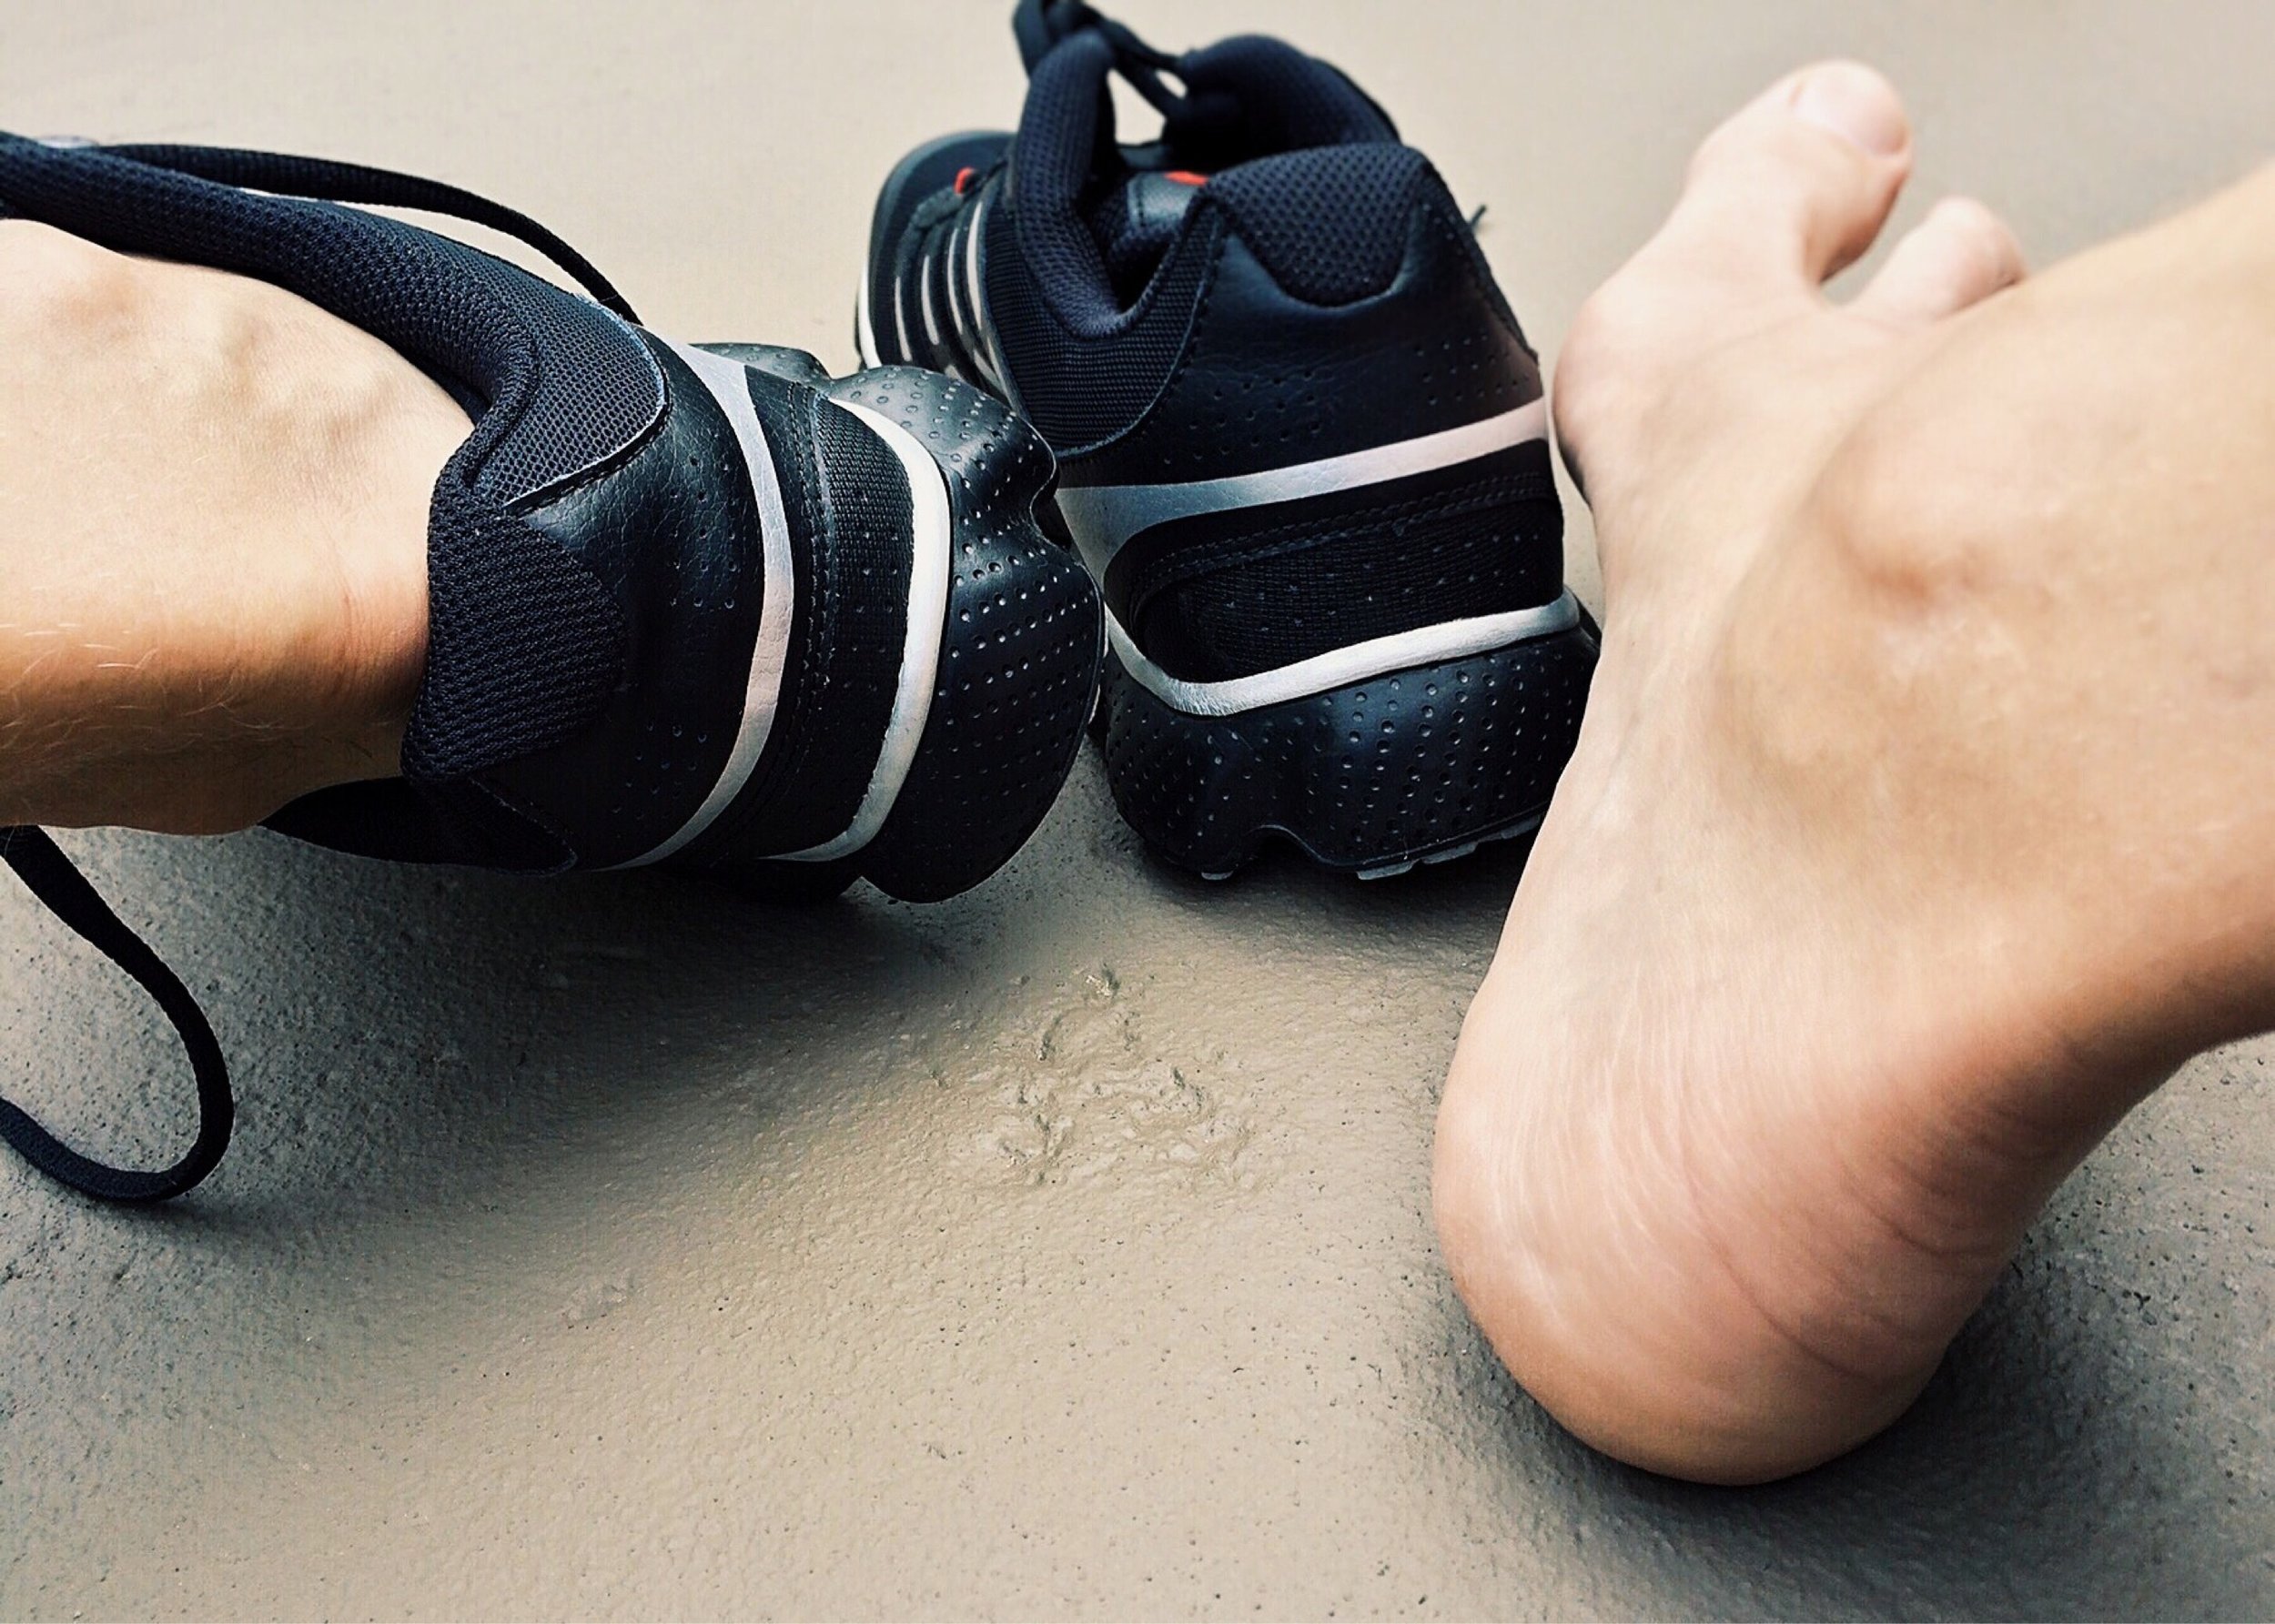 heel-pain-foot-strengthening-exercises